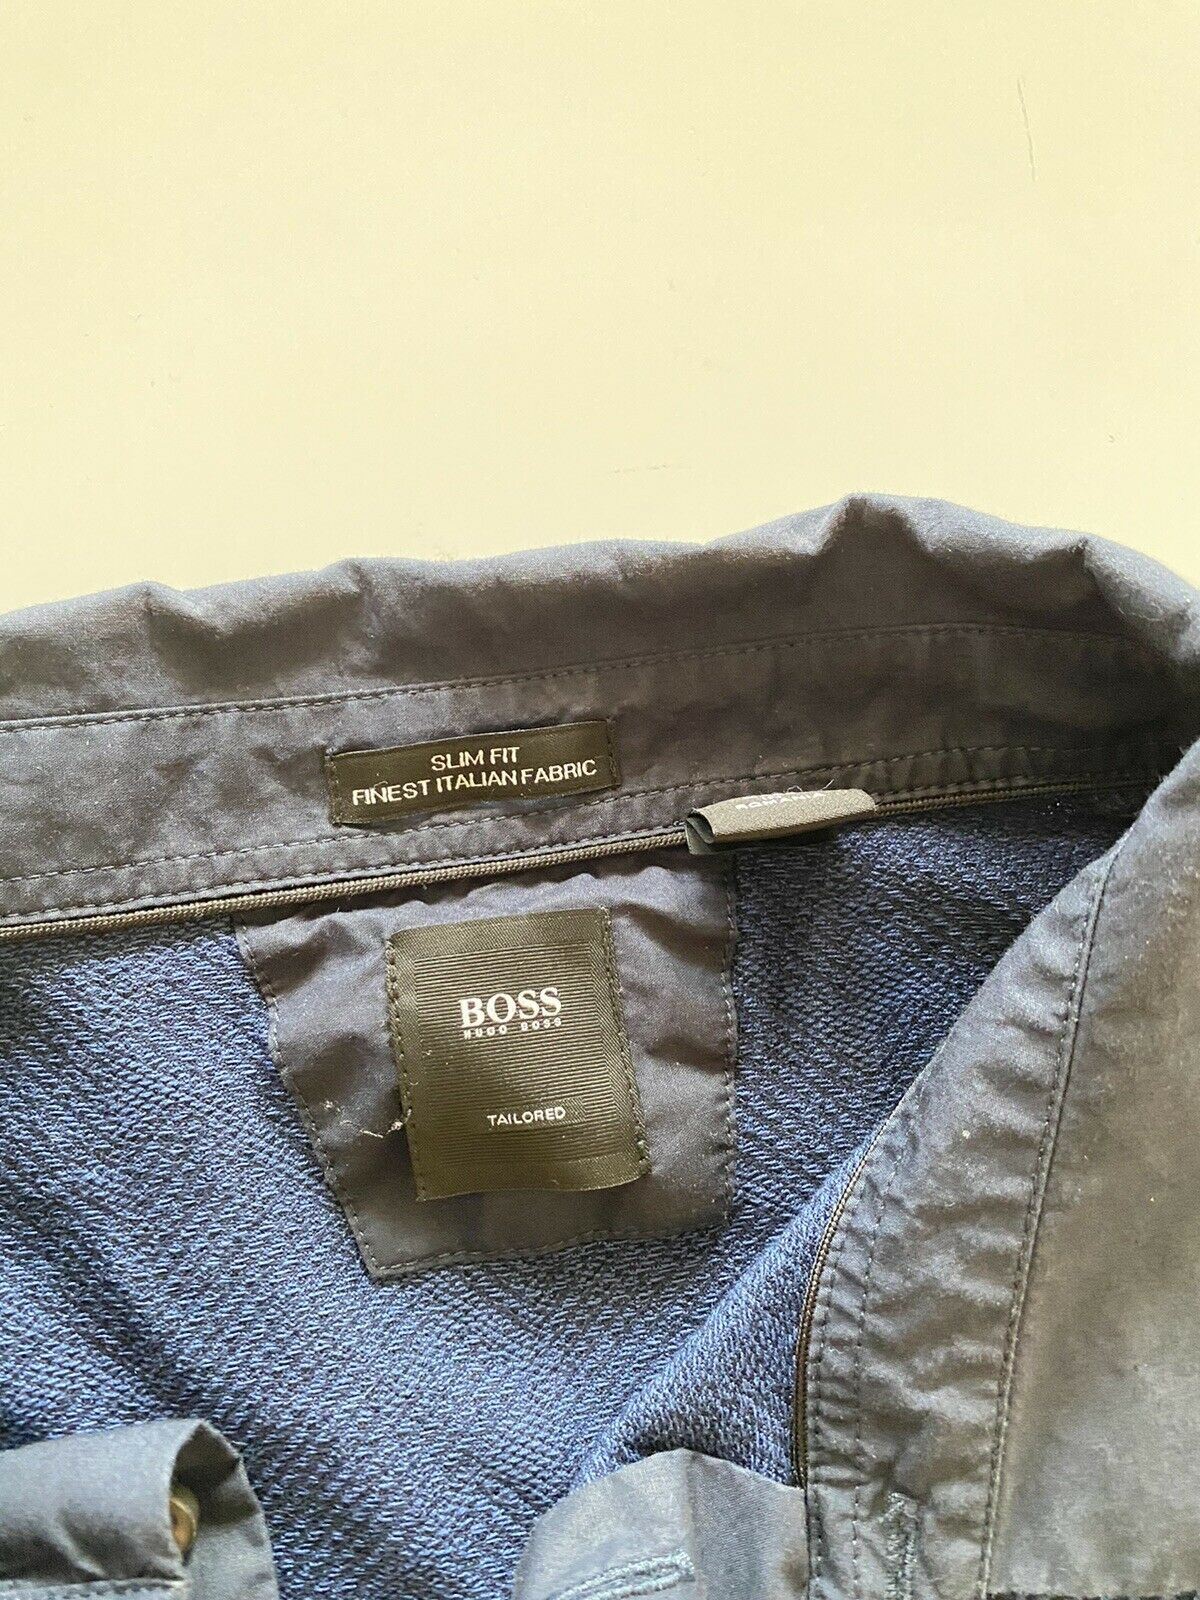 BOSS Hugo Boss Приталенная рубашка-поло приталенного кроя XL (подходит для ML), синяя 